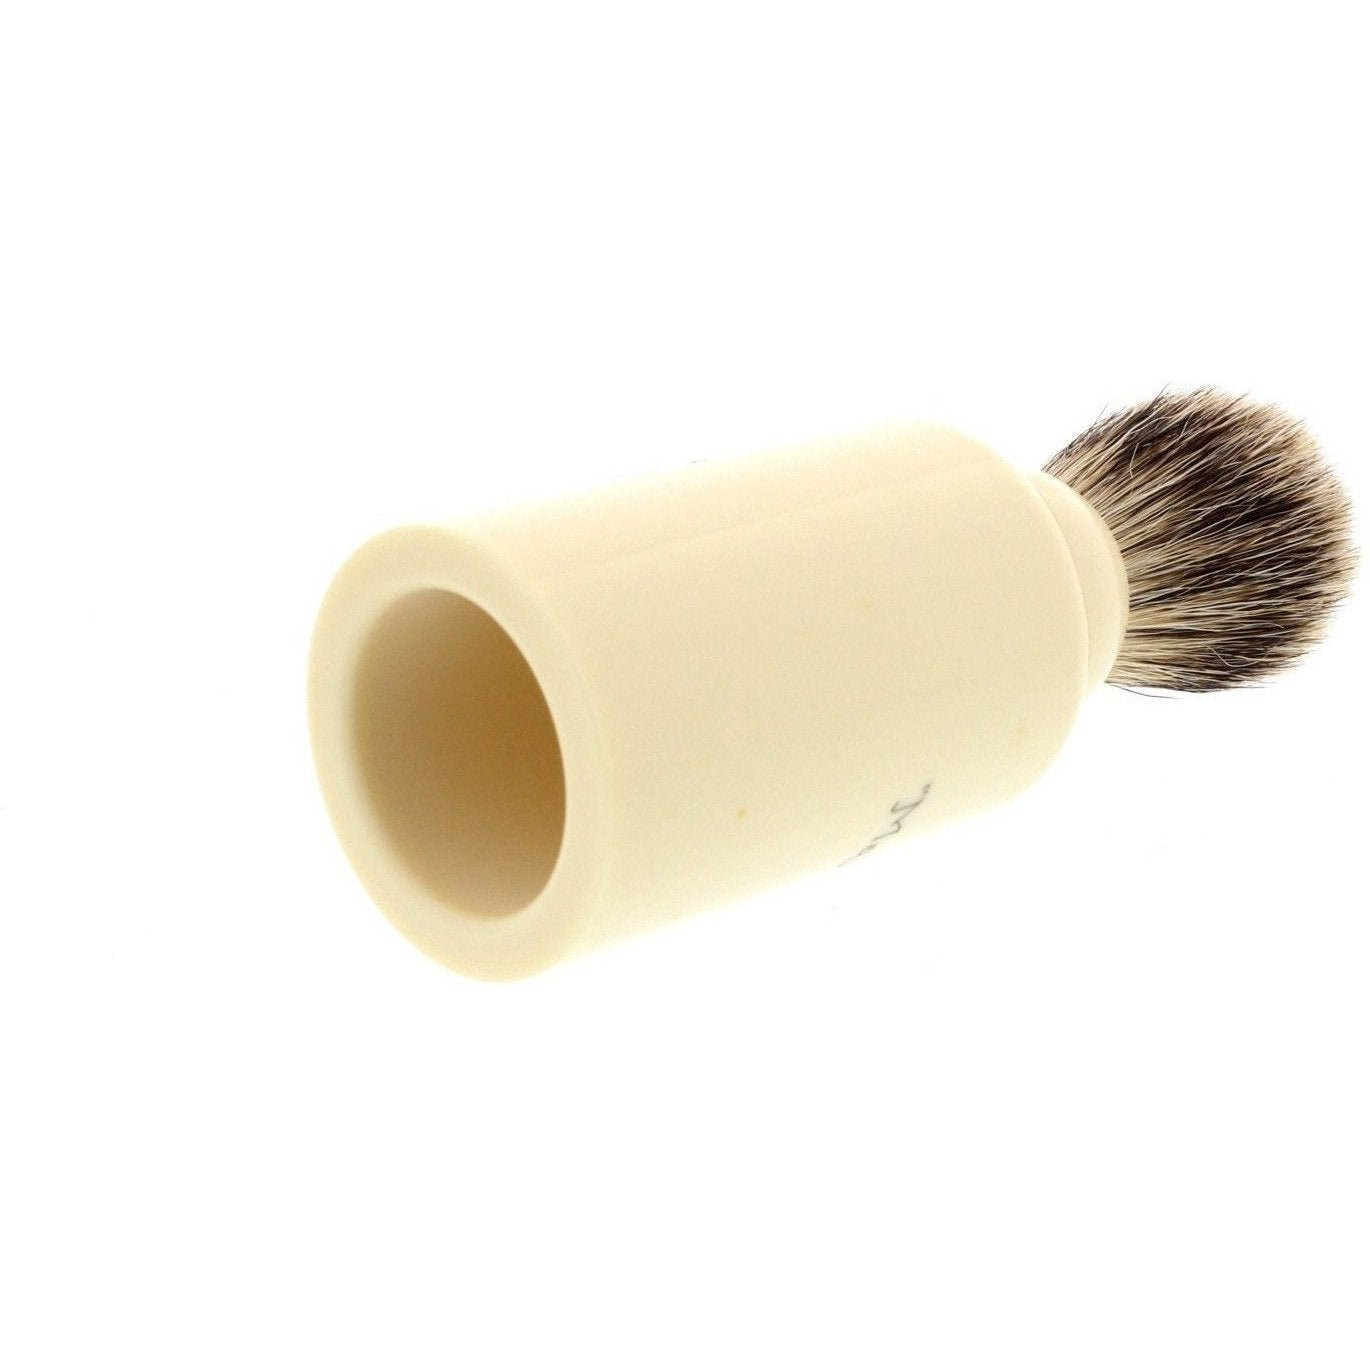 Product image 3 for Simpson Major 1 Best Badger Shaving Brush M1B